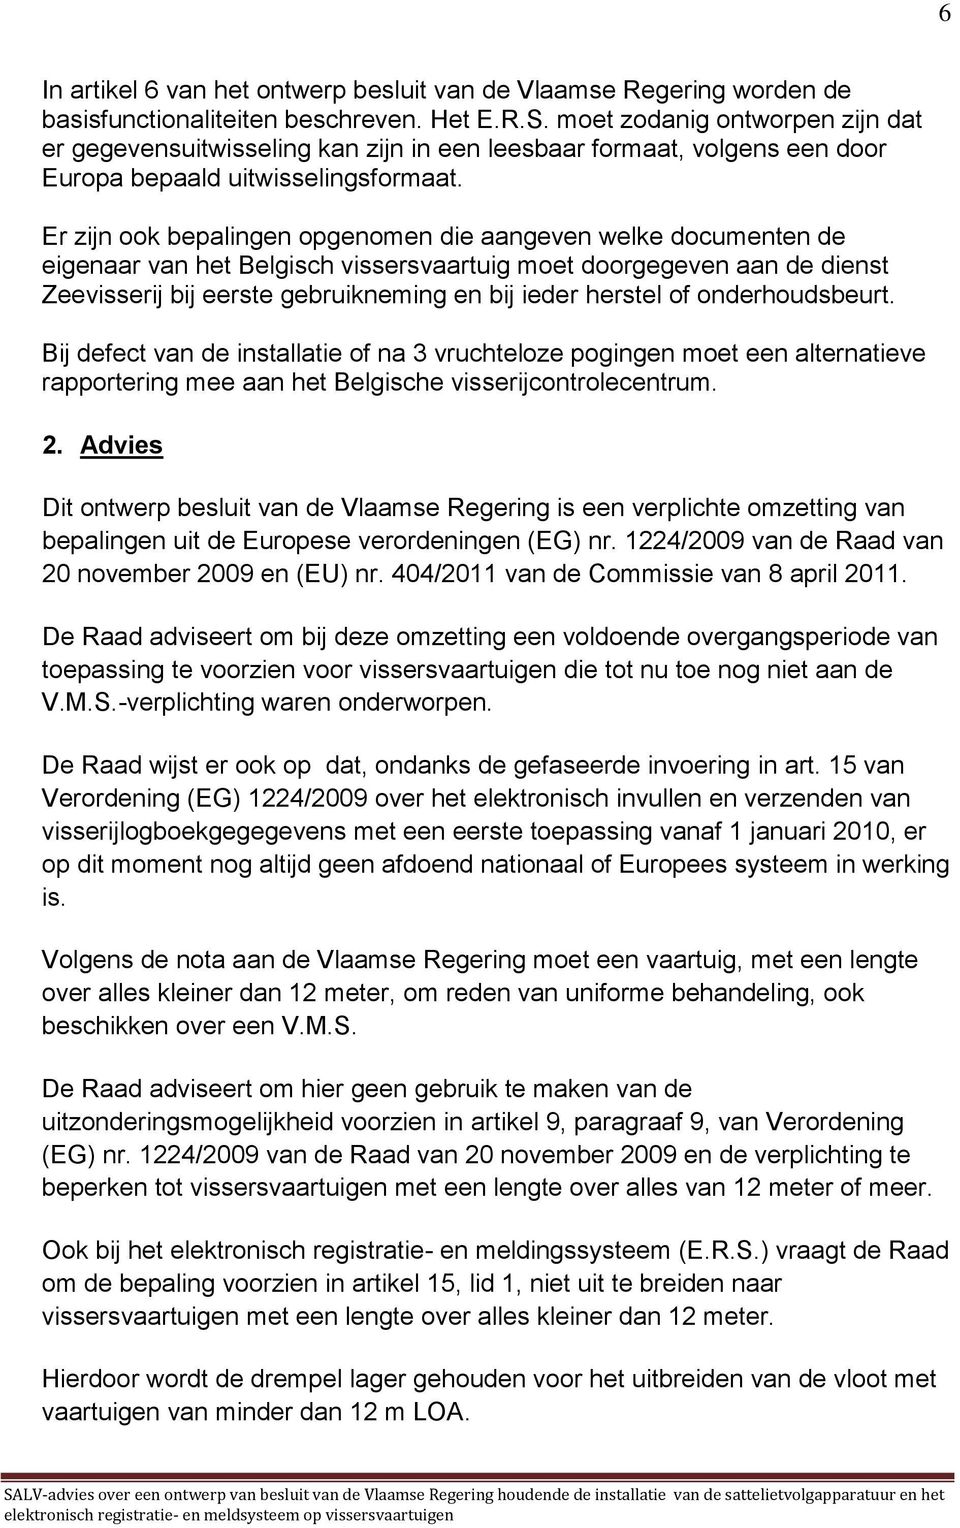 Er zijn ook bepalingen opgenomen die aangeven welke documenten de eigenaar van het Belgisch vissersvaartuig moet doorgegeven aan de dienst Zeevisserij bij eerste gebruikneming en bij ieder herstel of